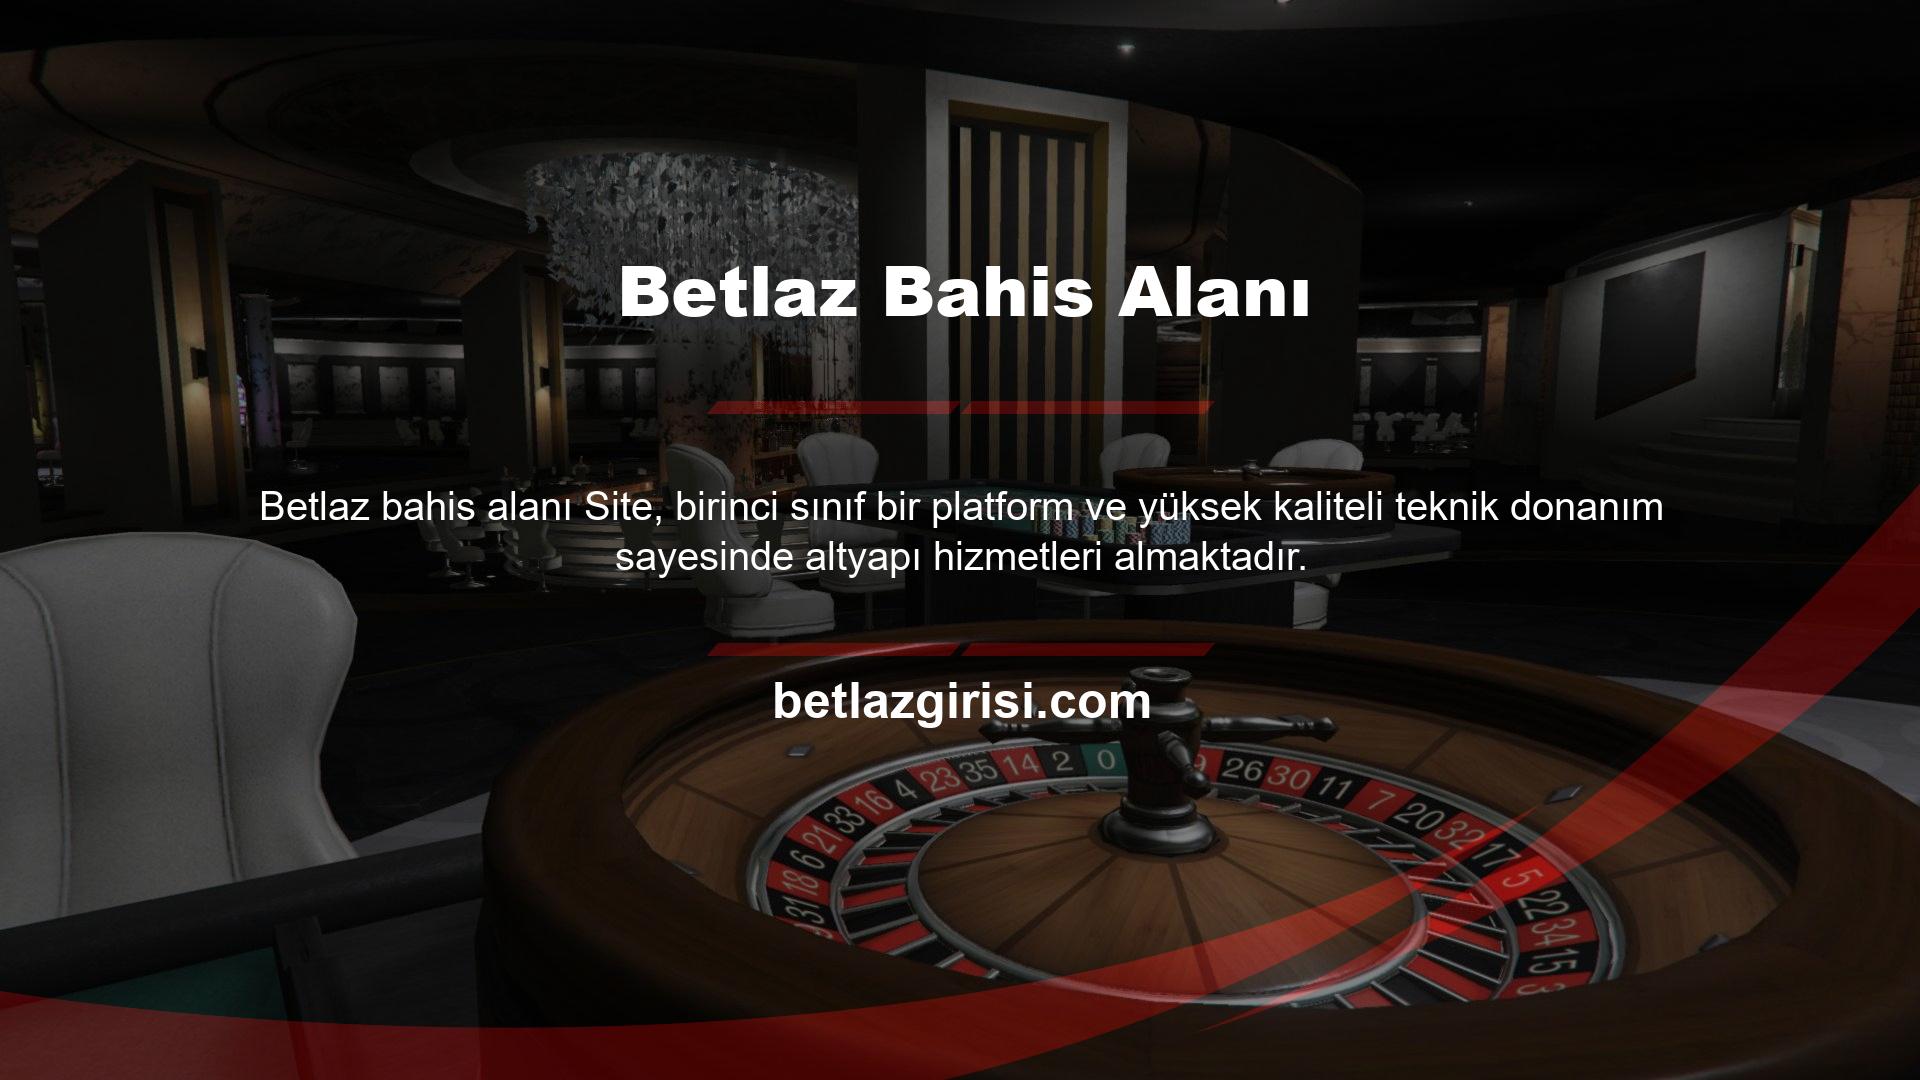 Betlaz, uzun yıllardır küresel oyun pazarında yer almasına rağmen, Türkiye pazarına yeni yeni girmiştir